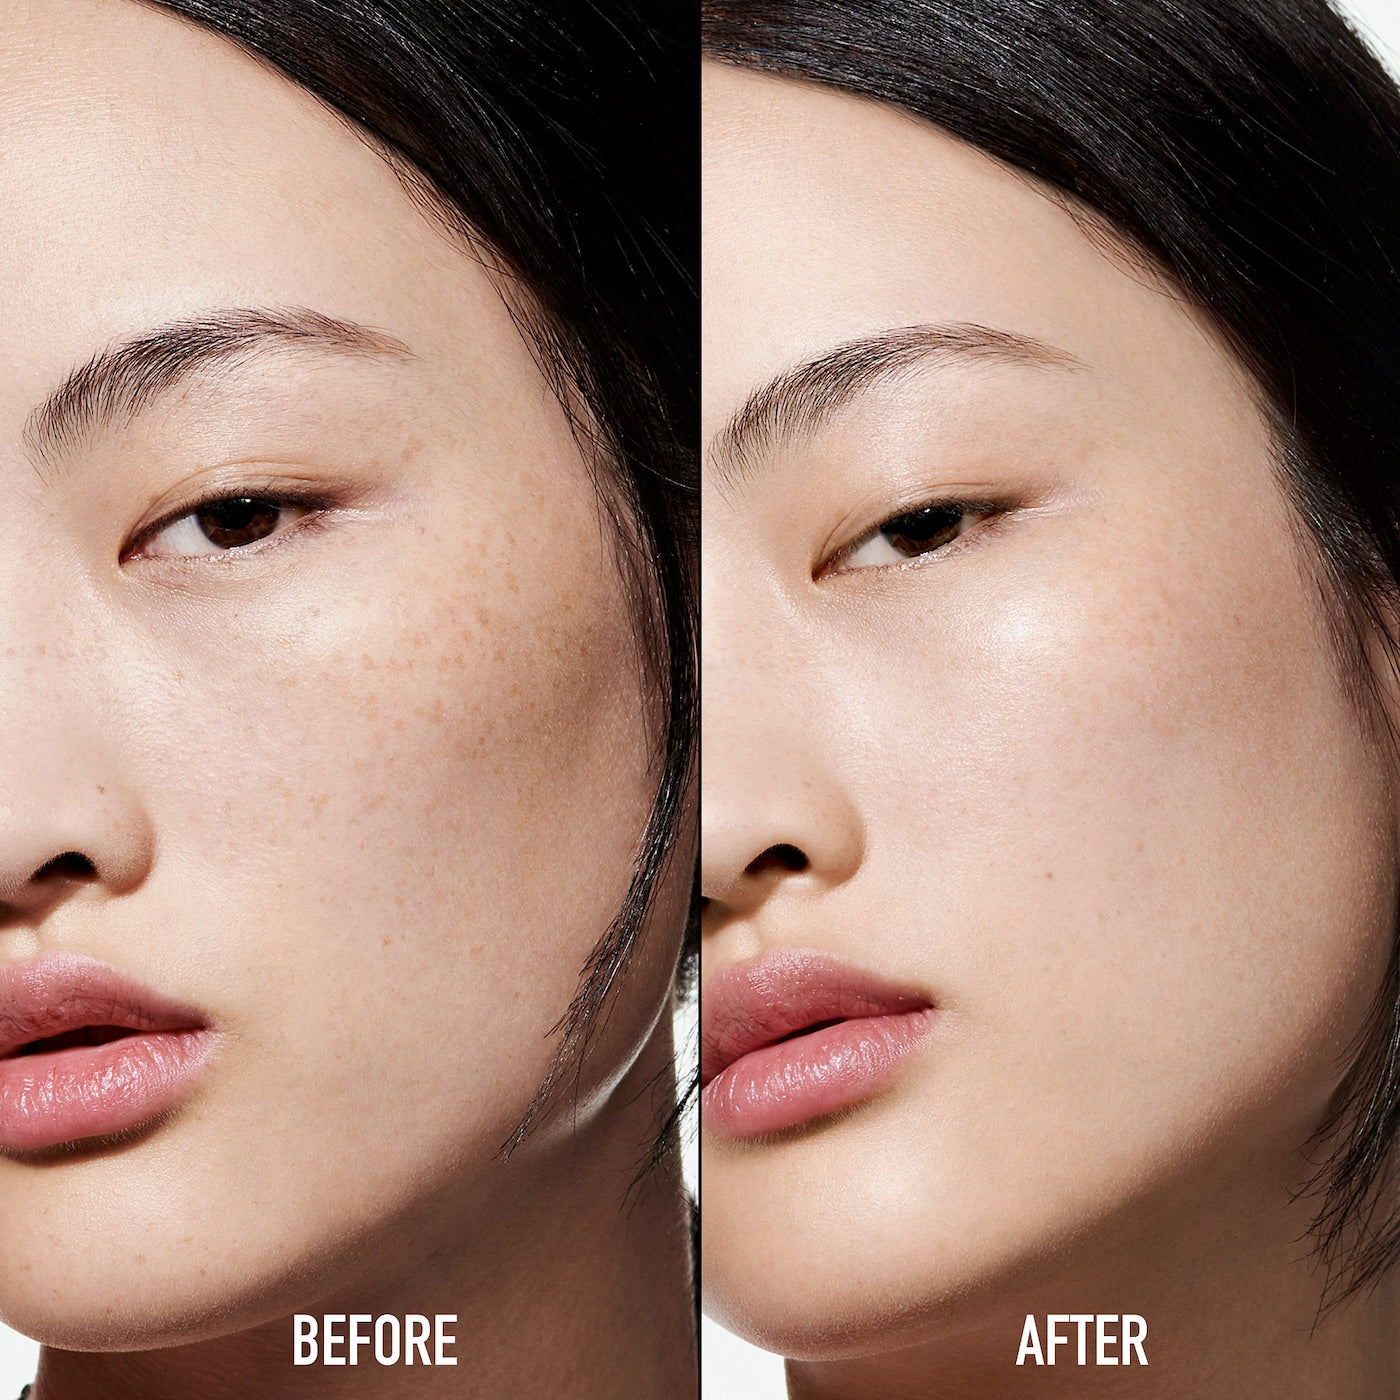 Dior BACKSTAGE Face & Body Primer